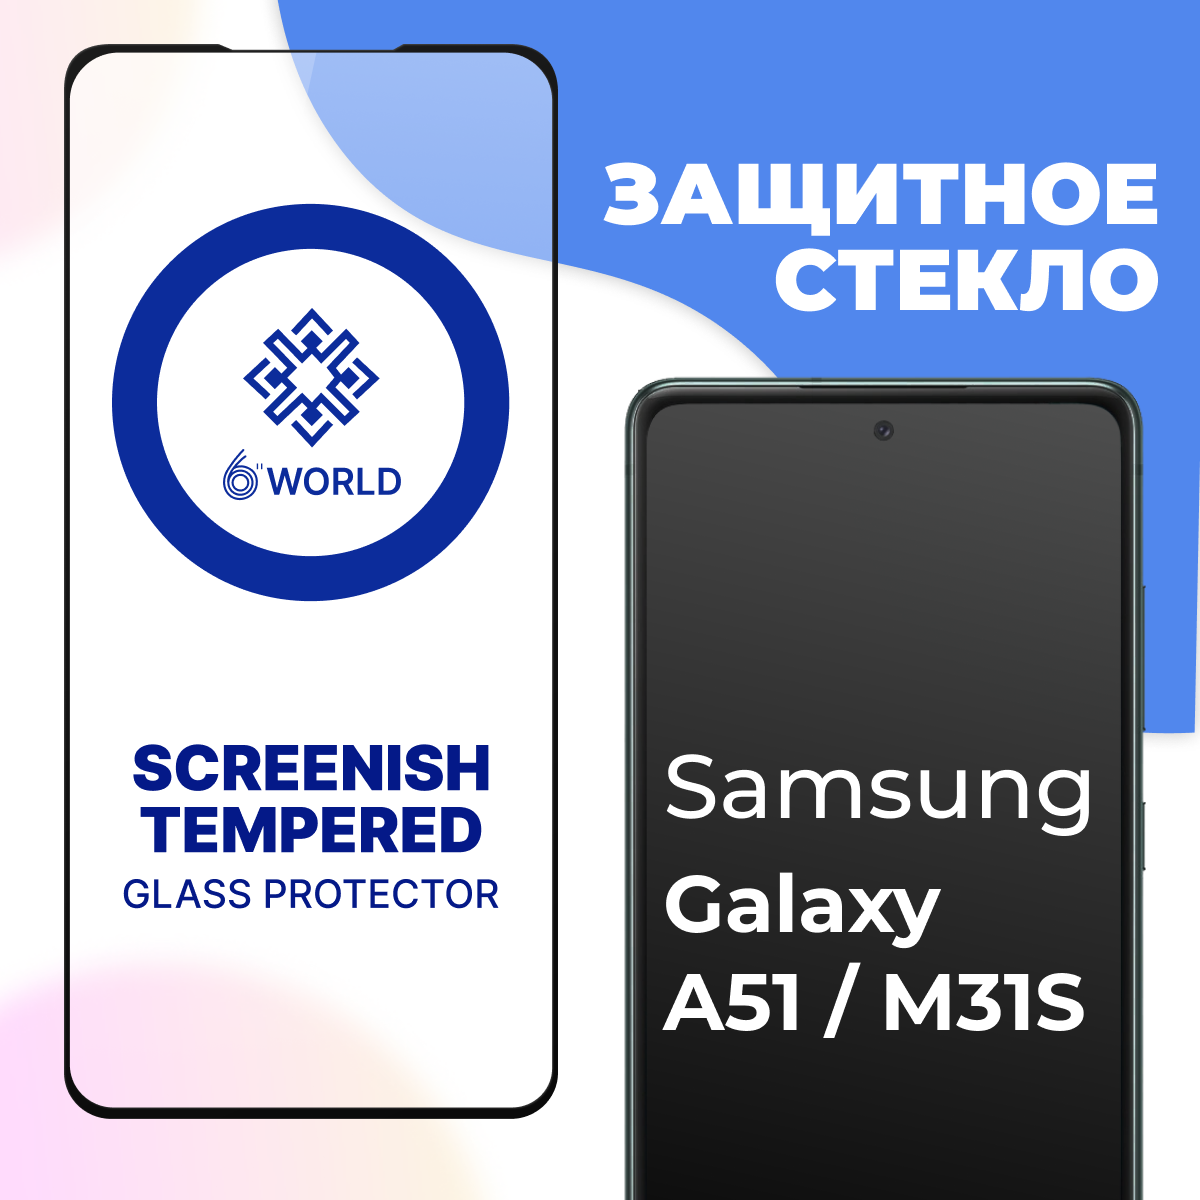 Противоударное защитное стекло с черной рамкой для смартфона Samsung Galaxy A51 и M31S / Полноэкранное глянцевое стекло на Самсунг Галакси А51 и М31С